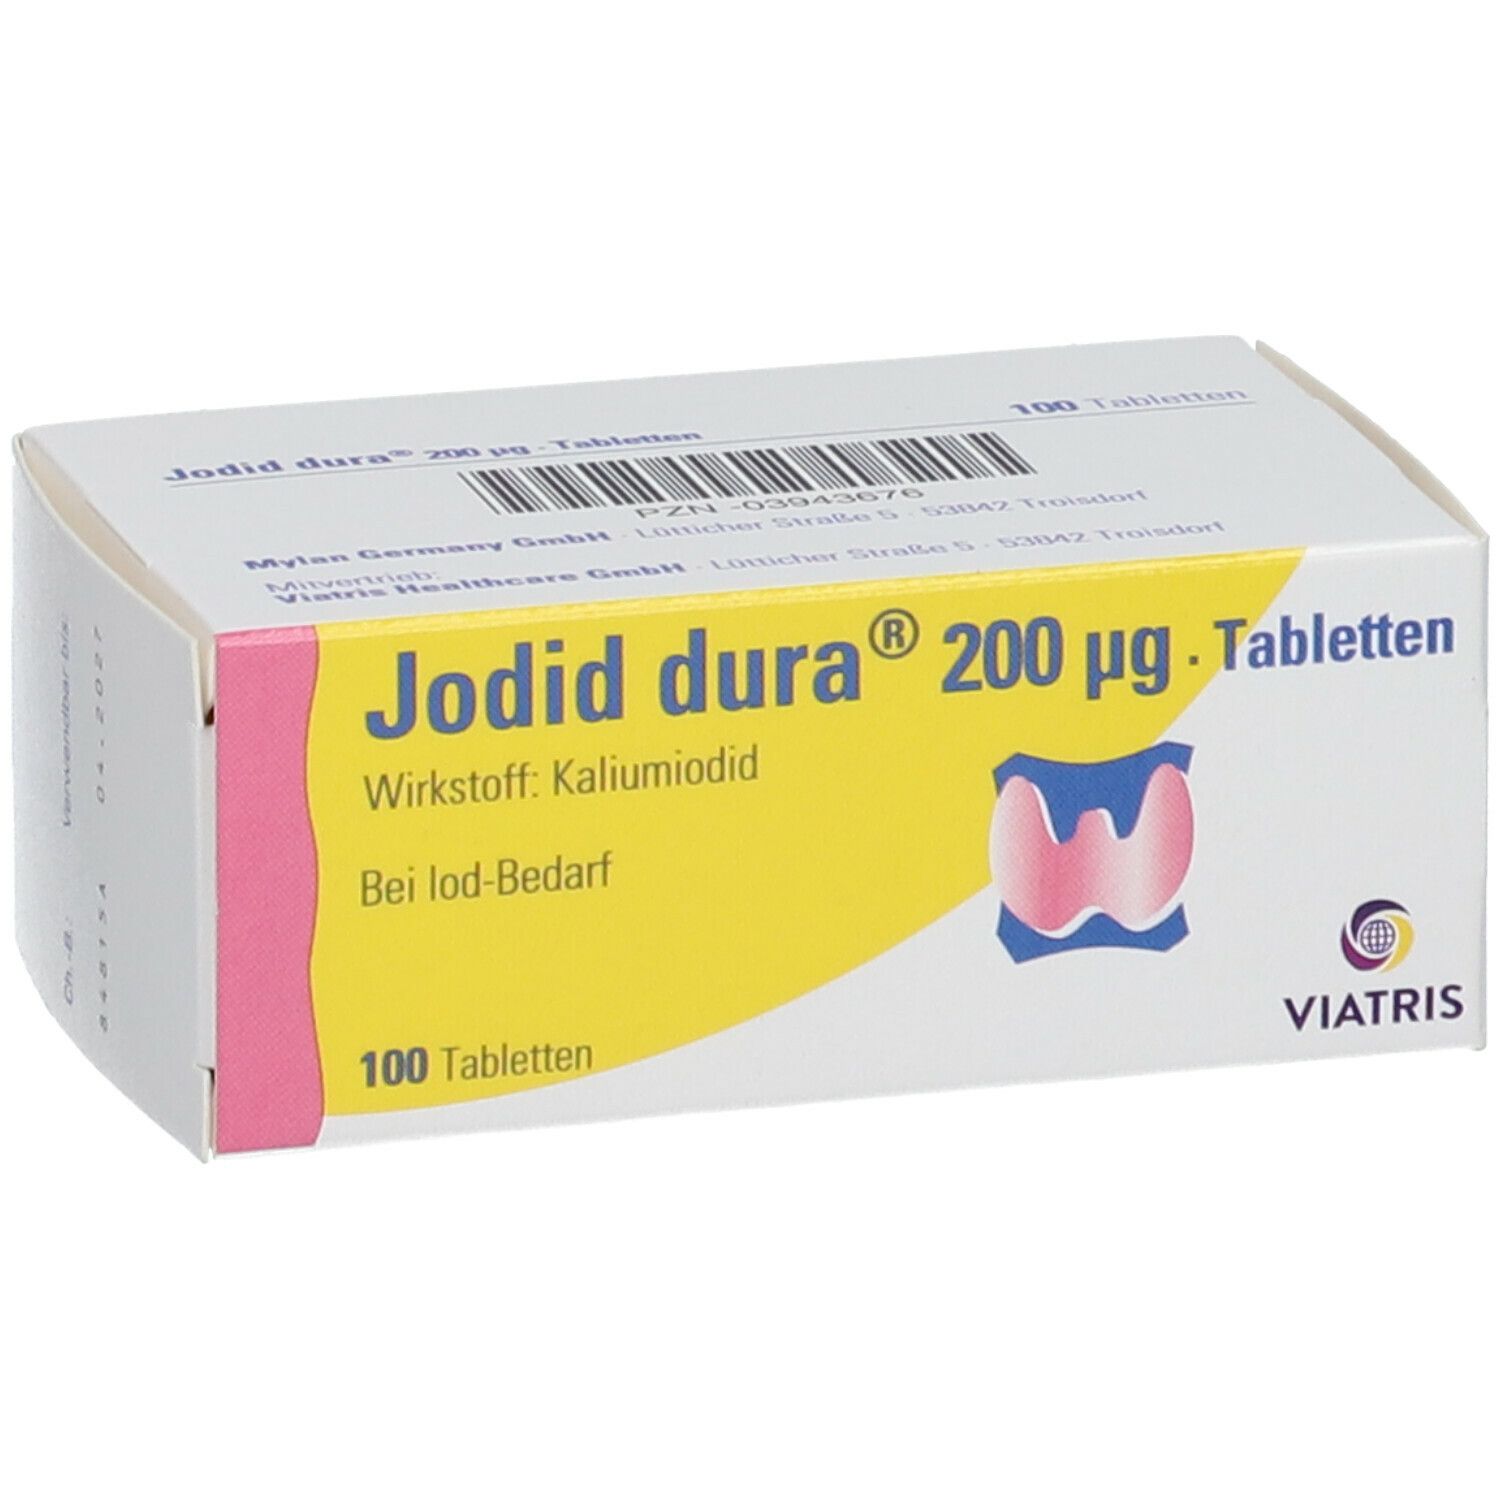 Jodid dura® 200 µg Tabletten